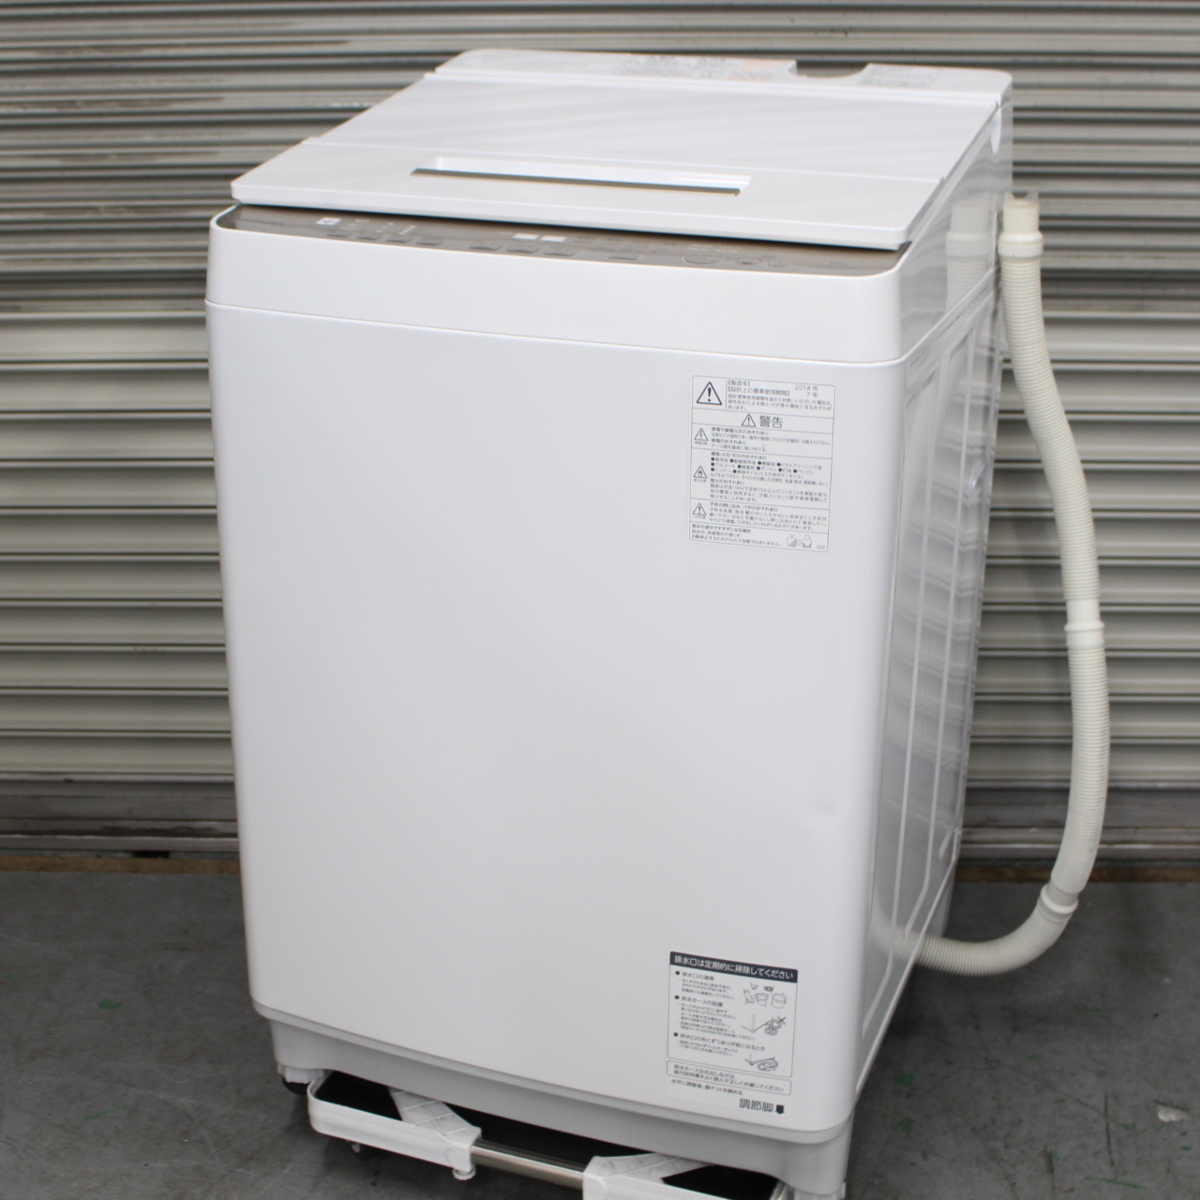 東芝全自動洗濯機 ZABOON エディオンモデルAW-9SVE5(W)2018年 - 洗濯機